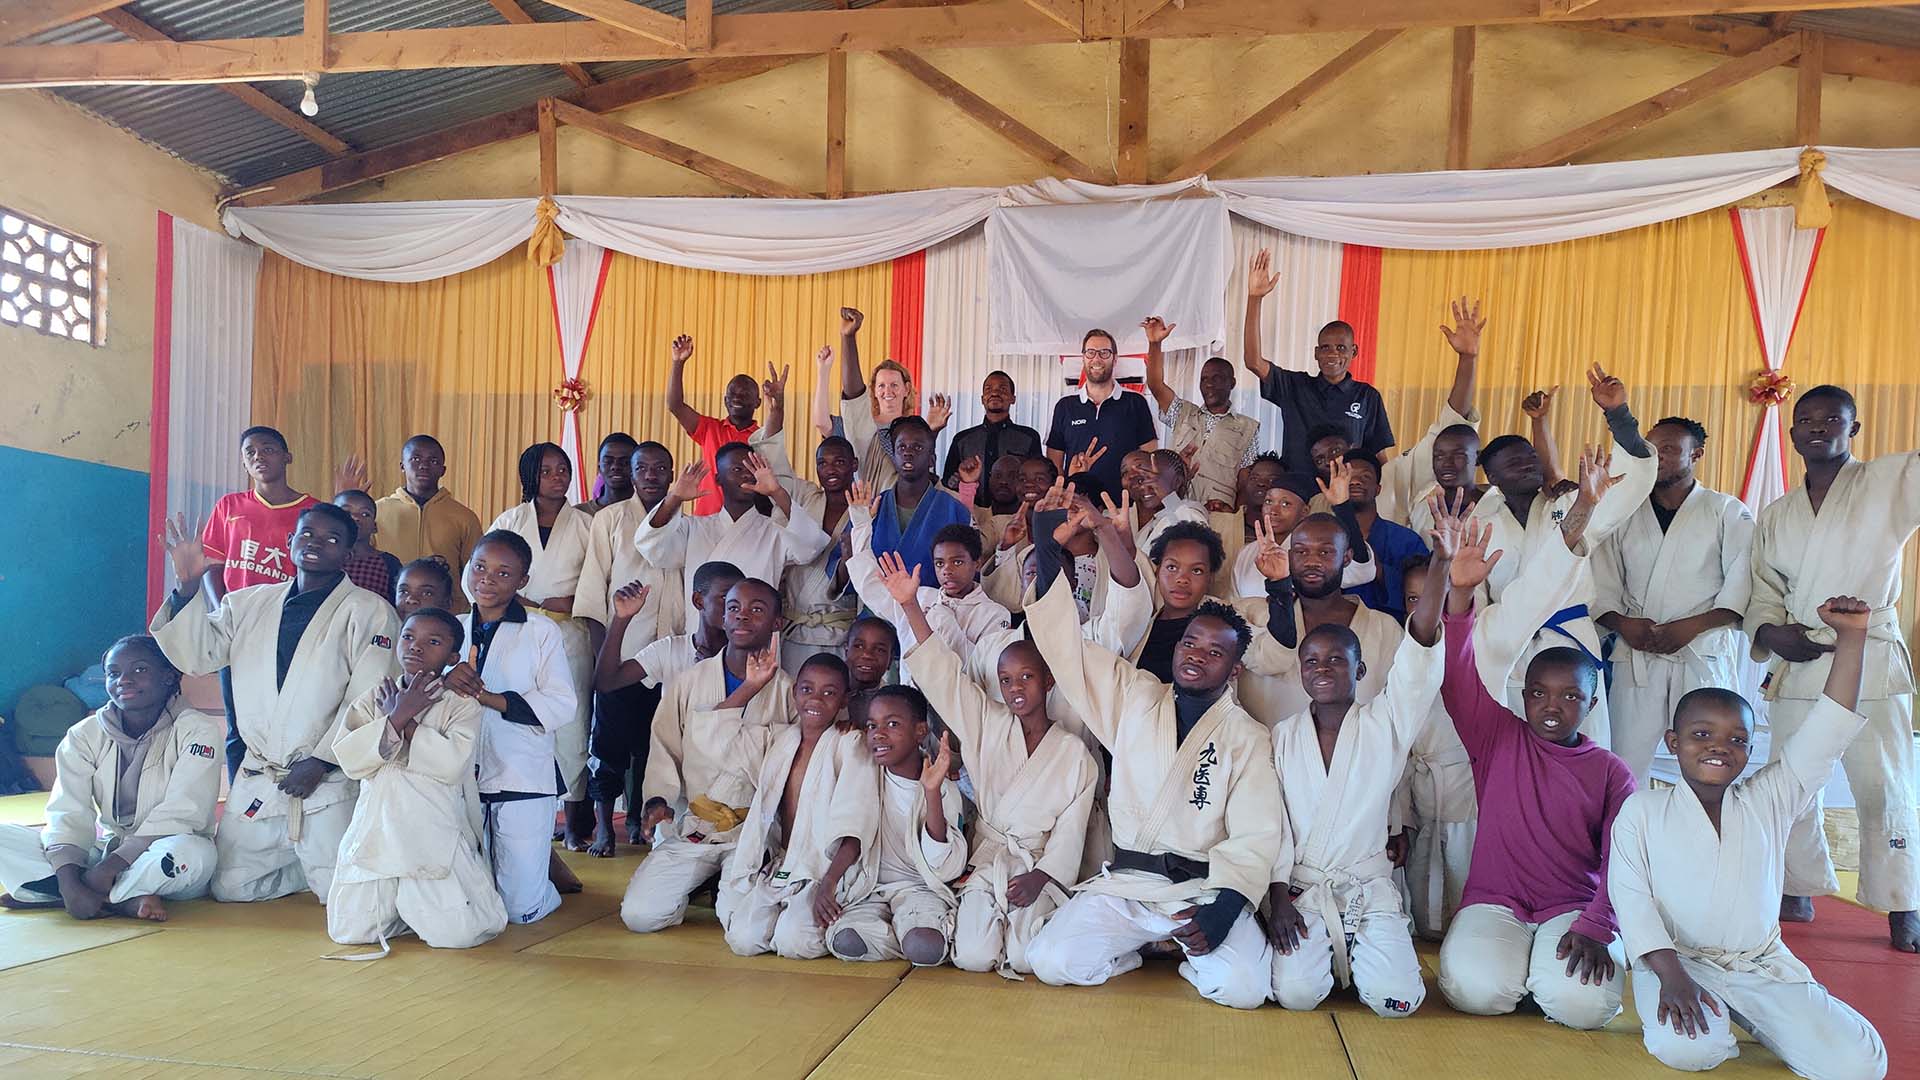 Et av prosjektene NIF støtter er judo-tilbud til barn og unge i flyktningleirer, her fra Dzaleka refugee camp i Malawi. Foto: Susanne Brovold Hvidsten